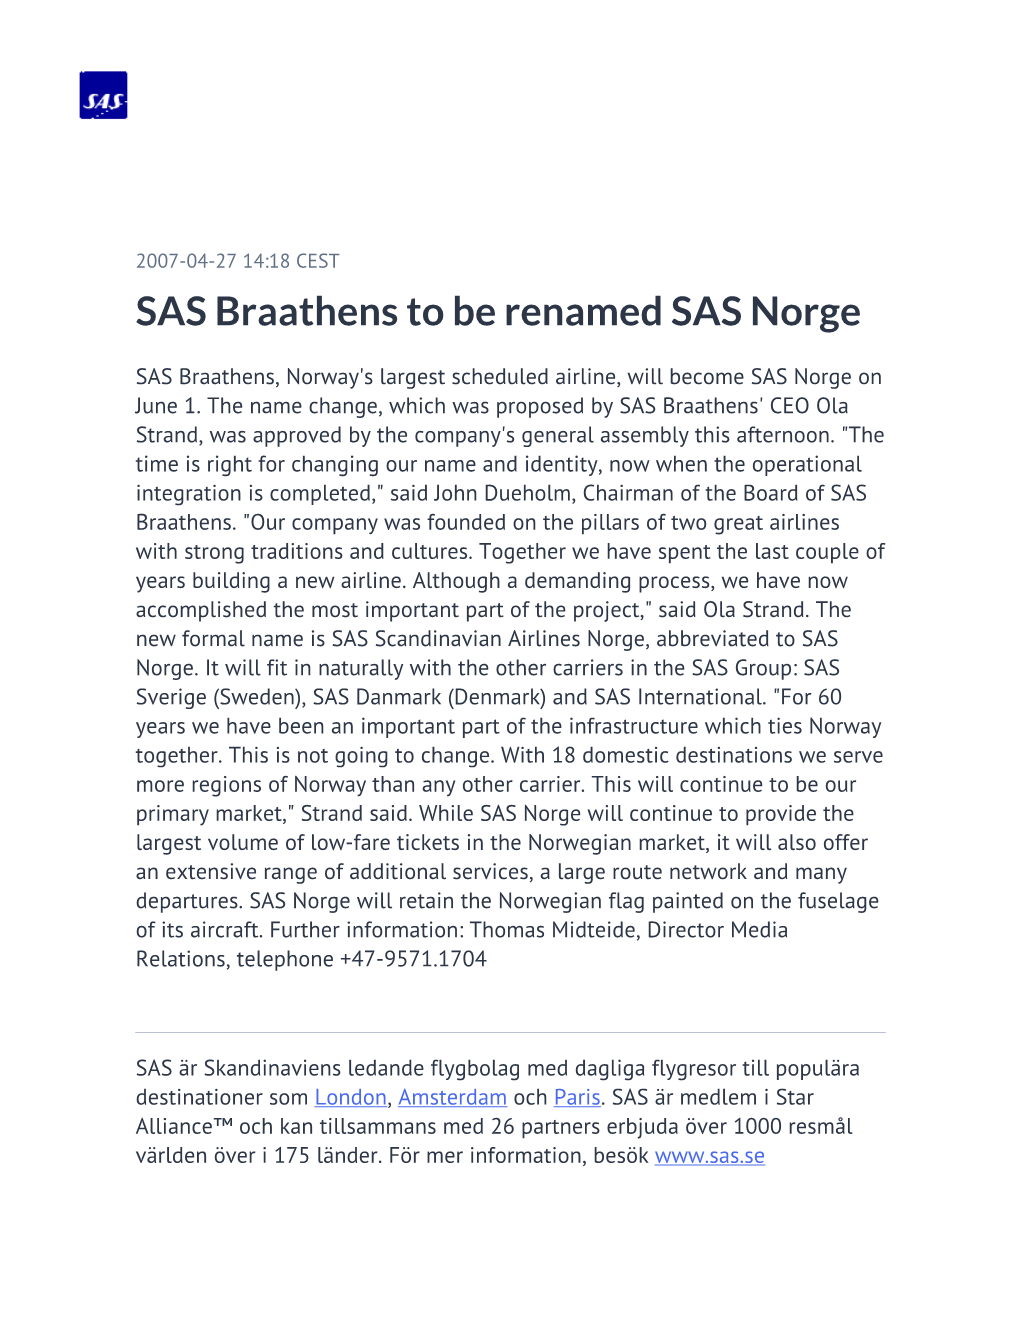 SAS Braathens to Be Renamed SAS Norge